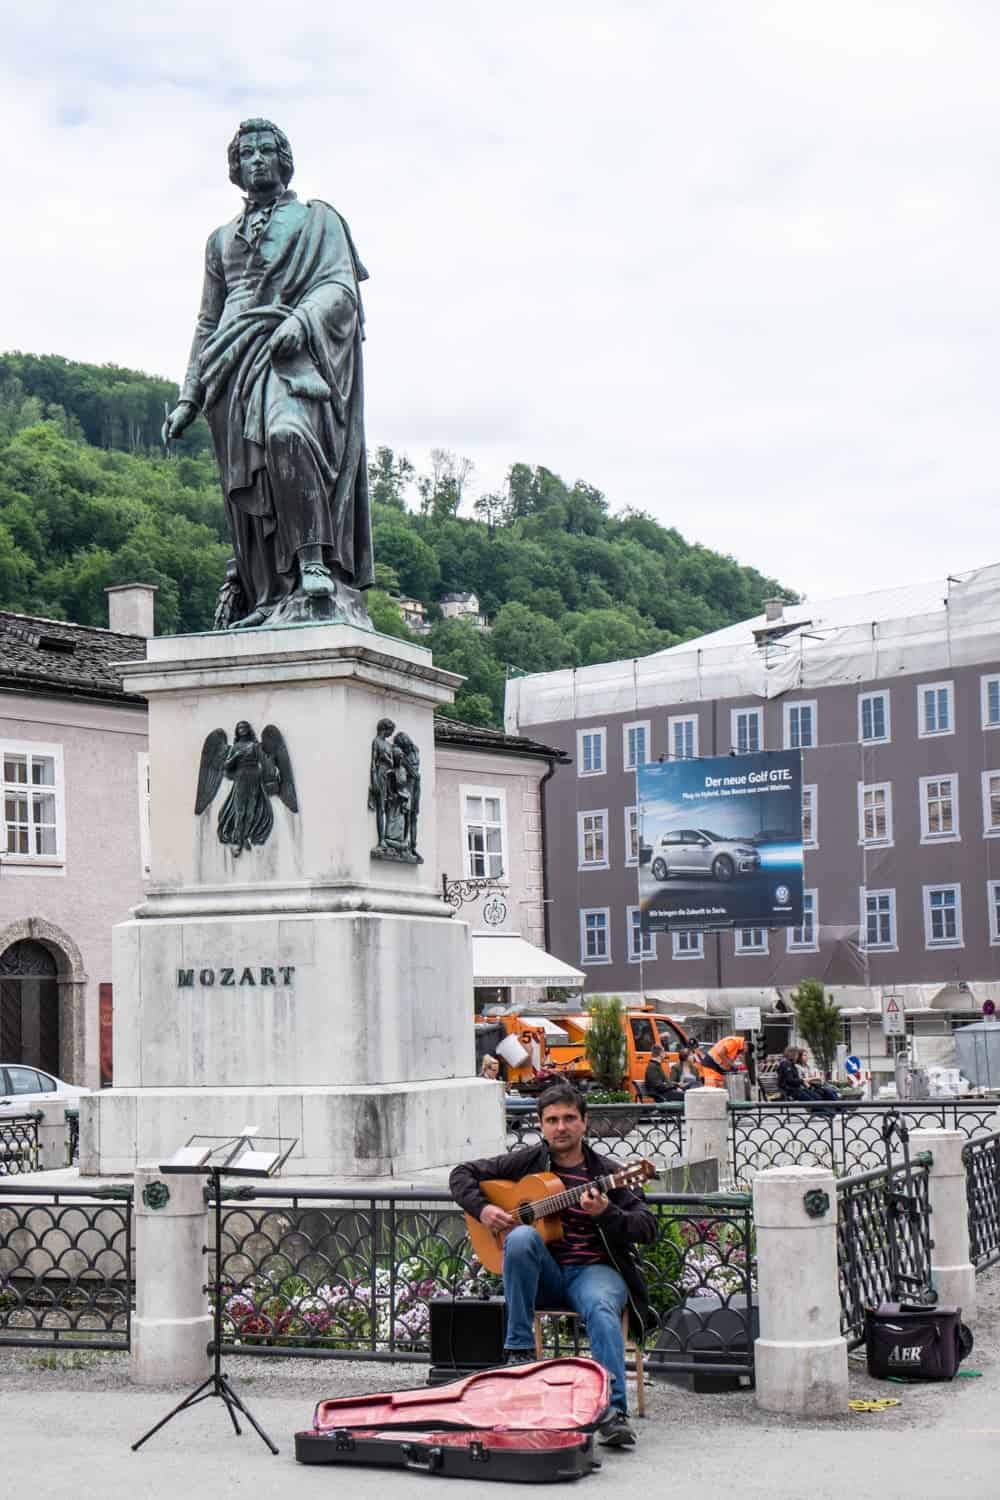 Mozart Statue in Salzburg, Austria